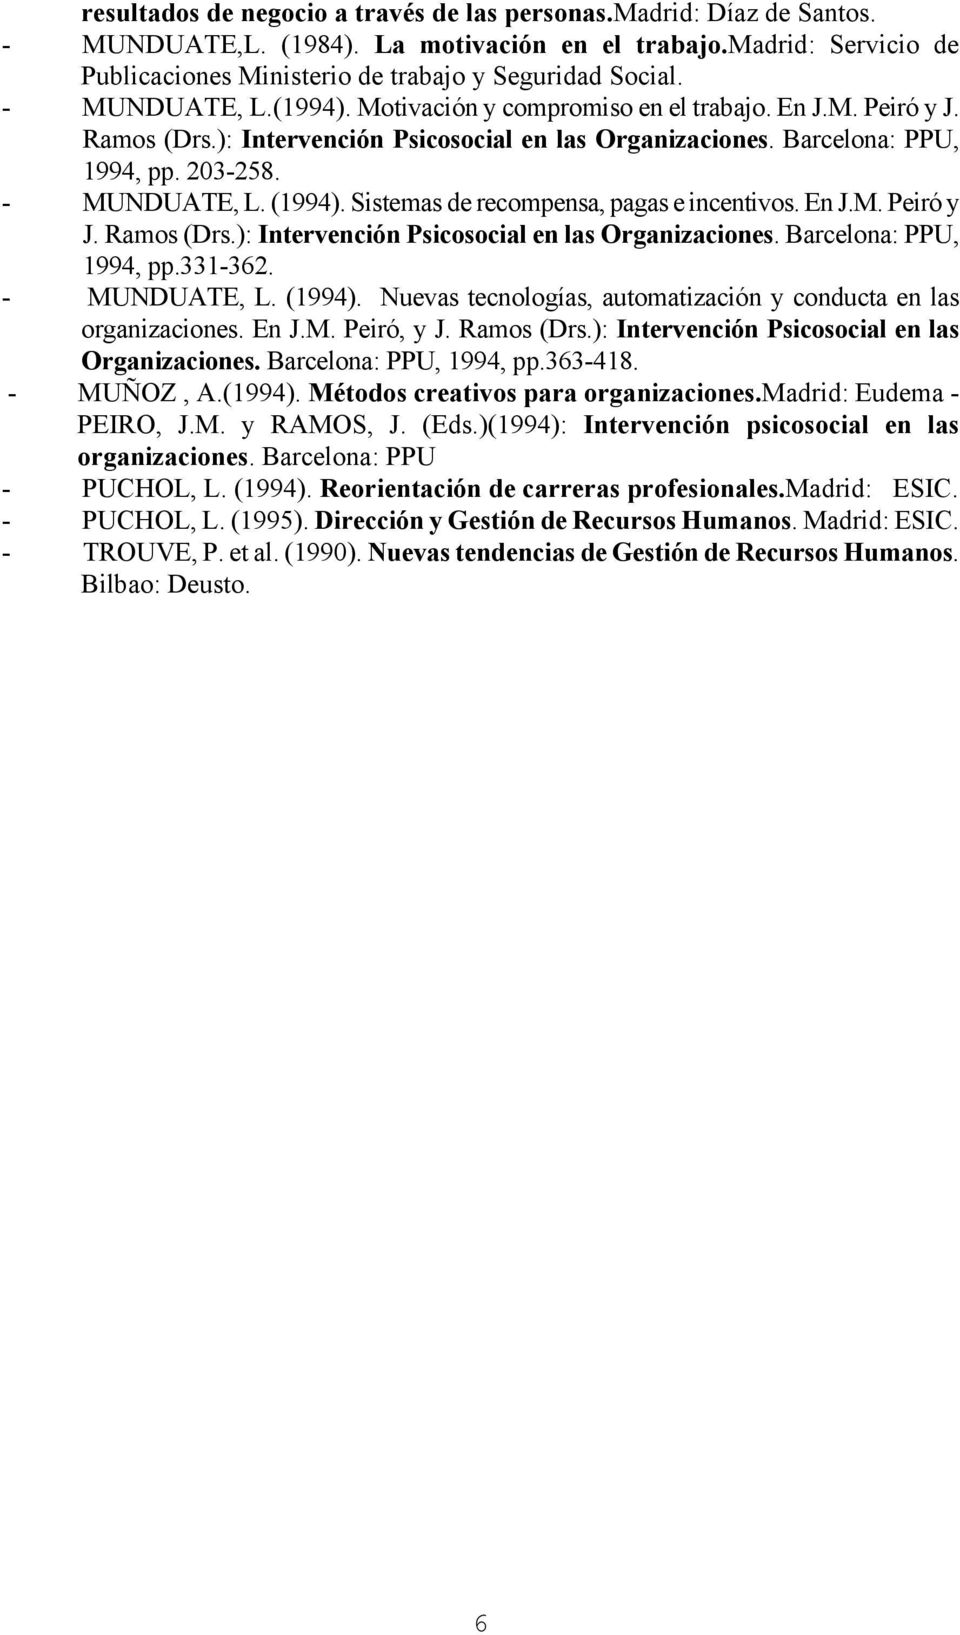 Sistemas de recompensa, pagas e incentivos. En J.M. Peiró y J. Ramos (Drs.): Intervención Psicosocial en las Organizaciones. Barcelona: PPU, 1994, pp.331-362. - MUNDUATE, L. (1994).